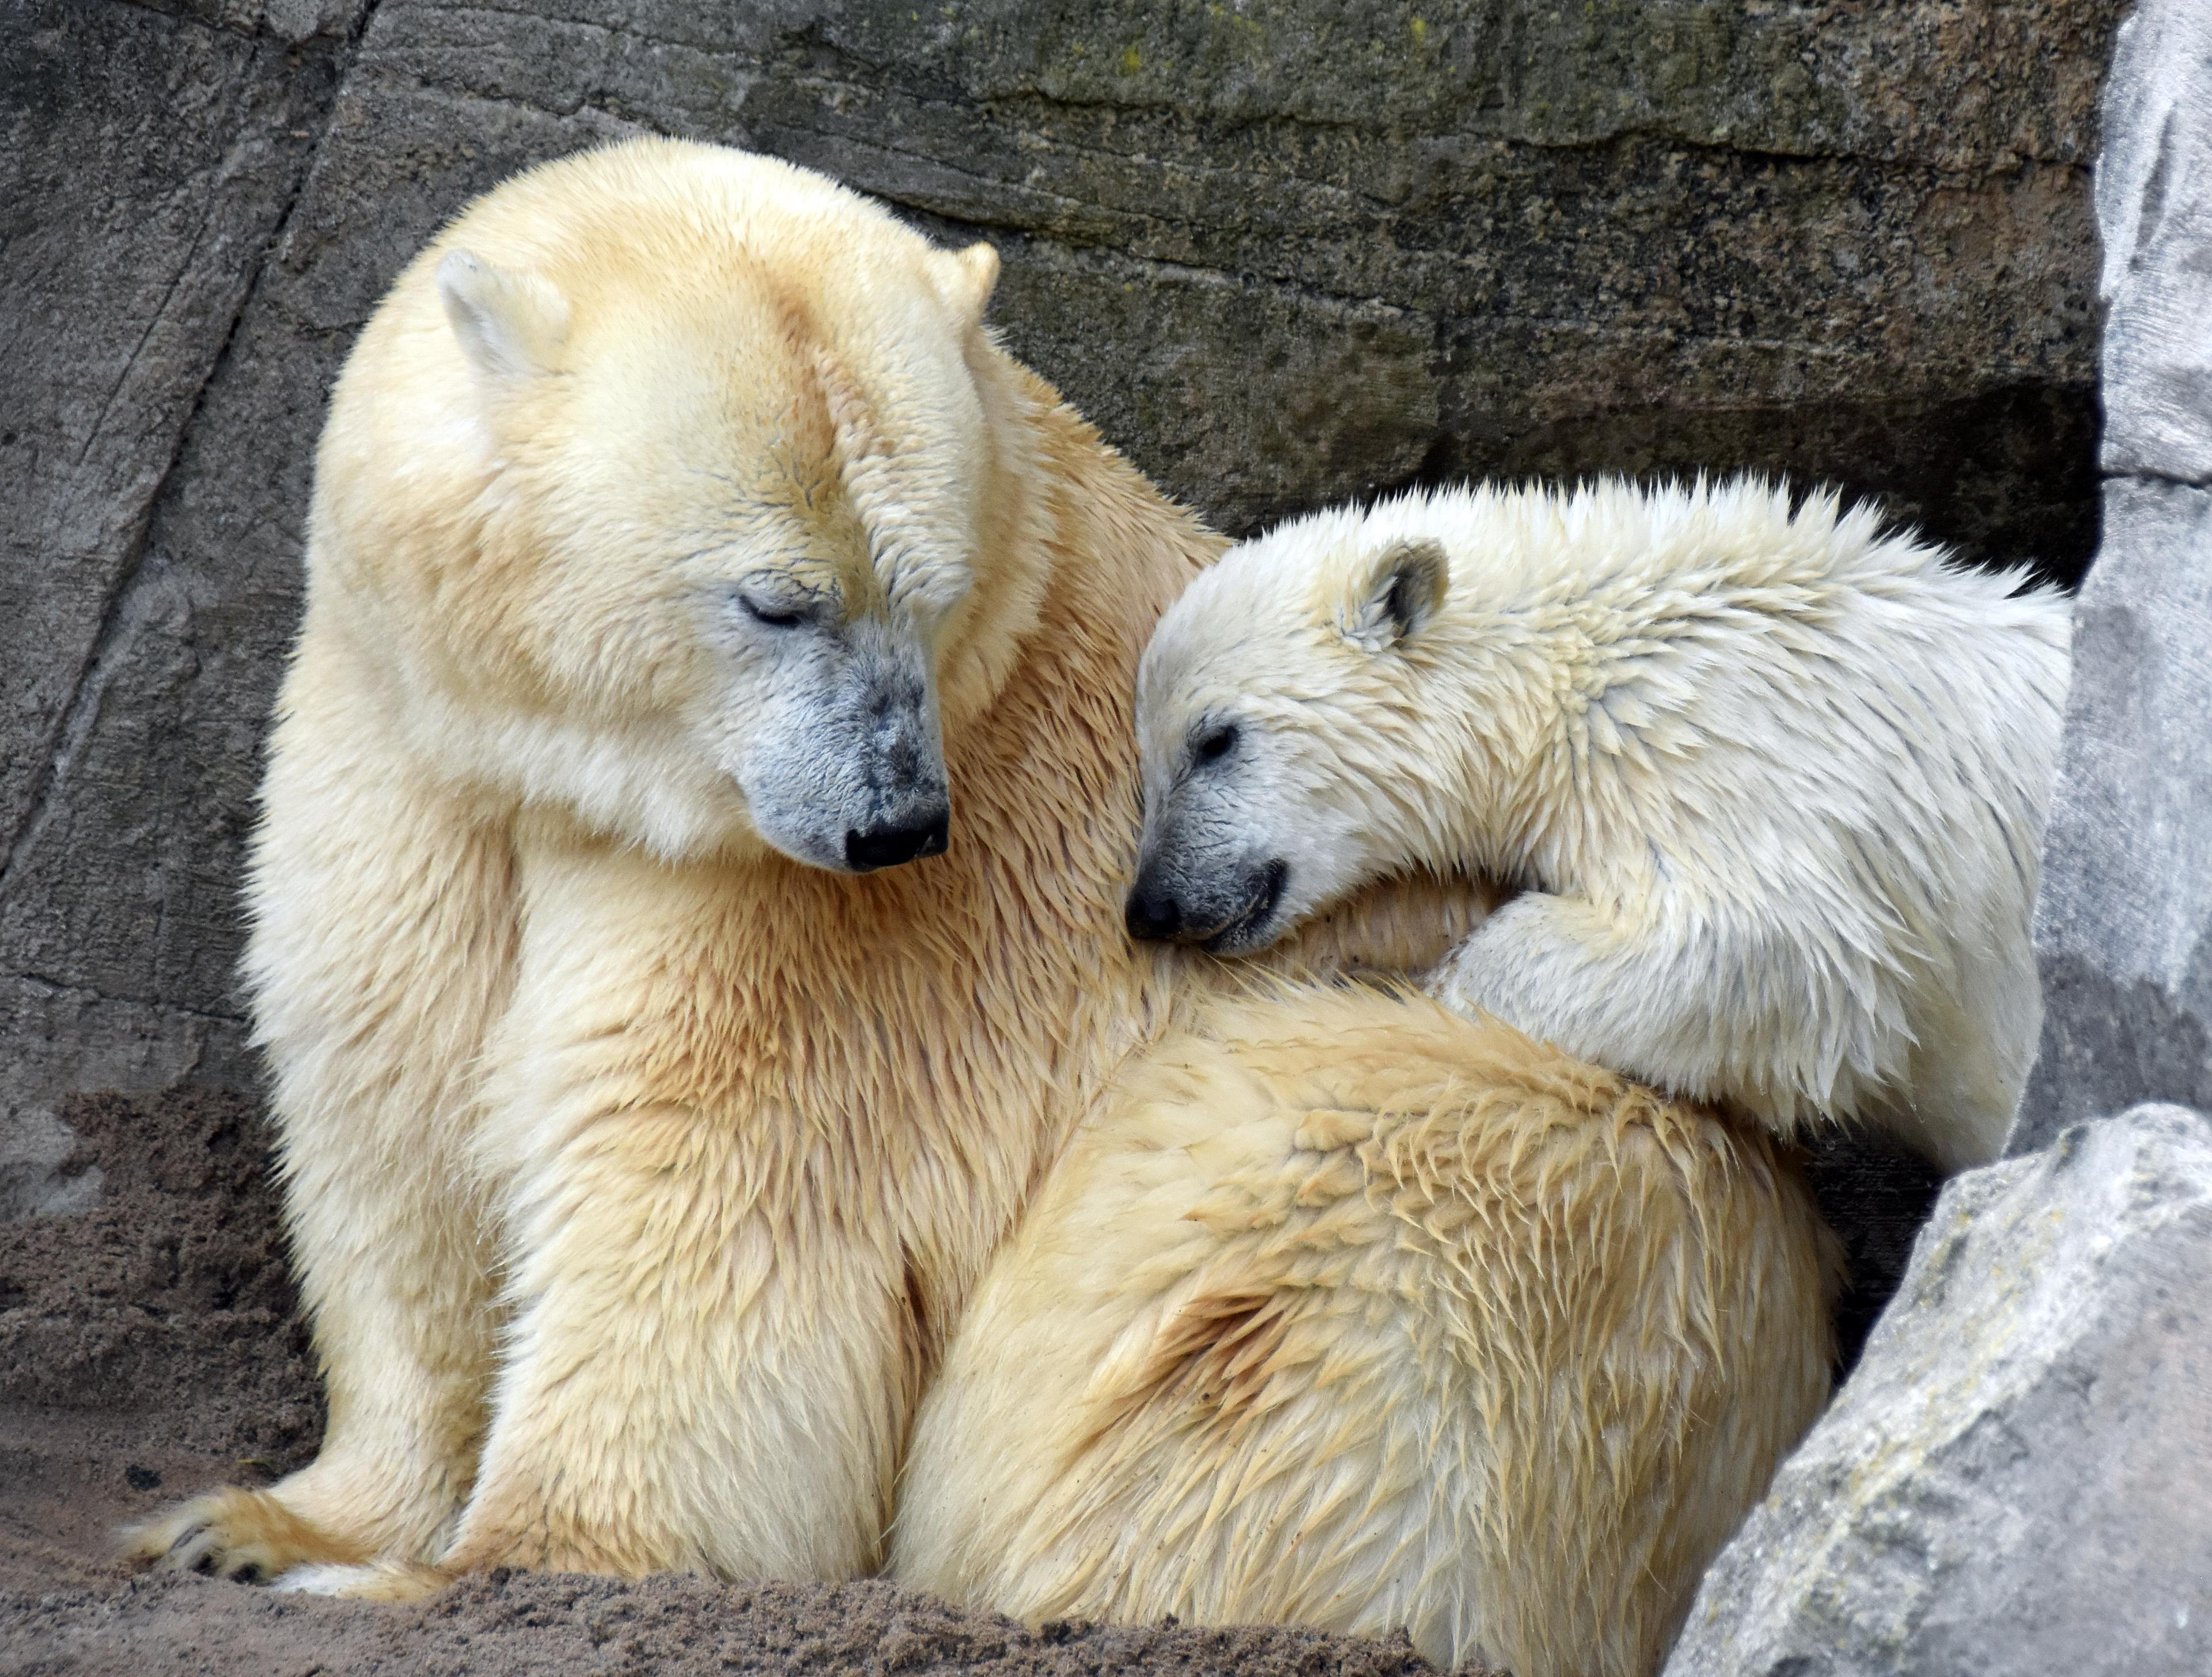 Nana ist der erste Eisbären-Nachwuchs im Erlebnis-Zoo